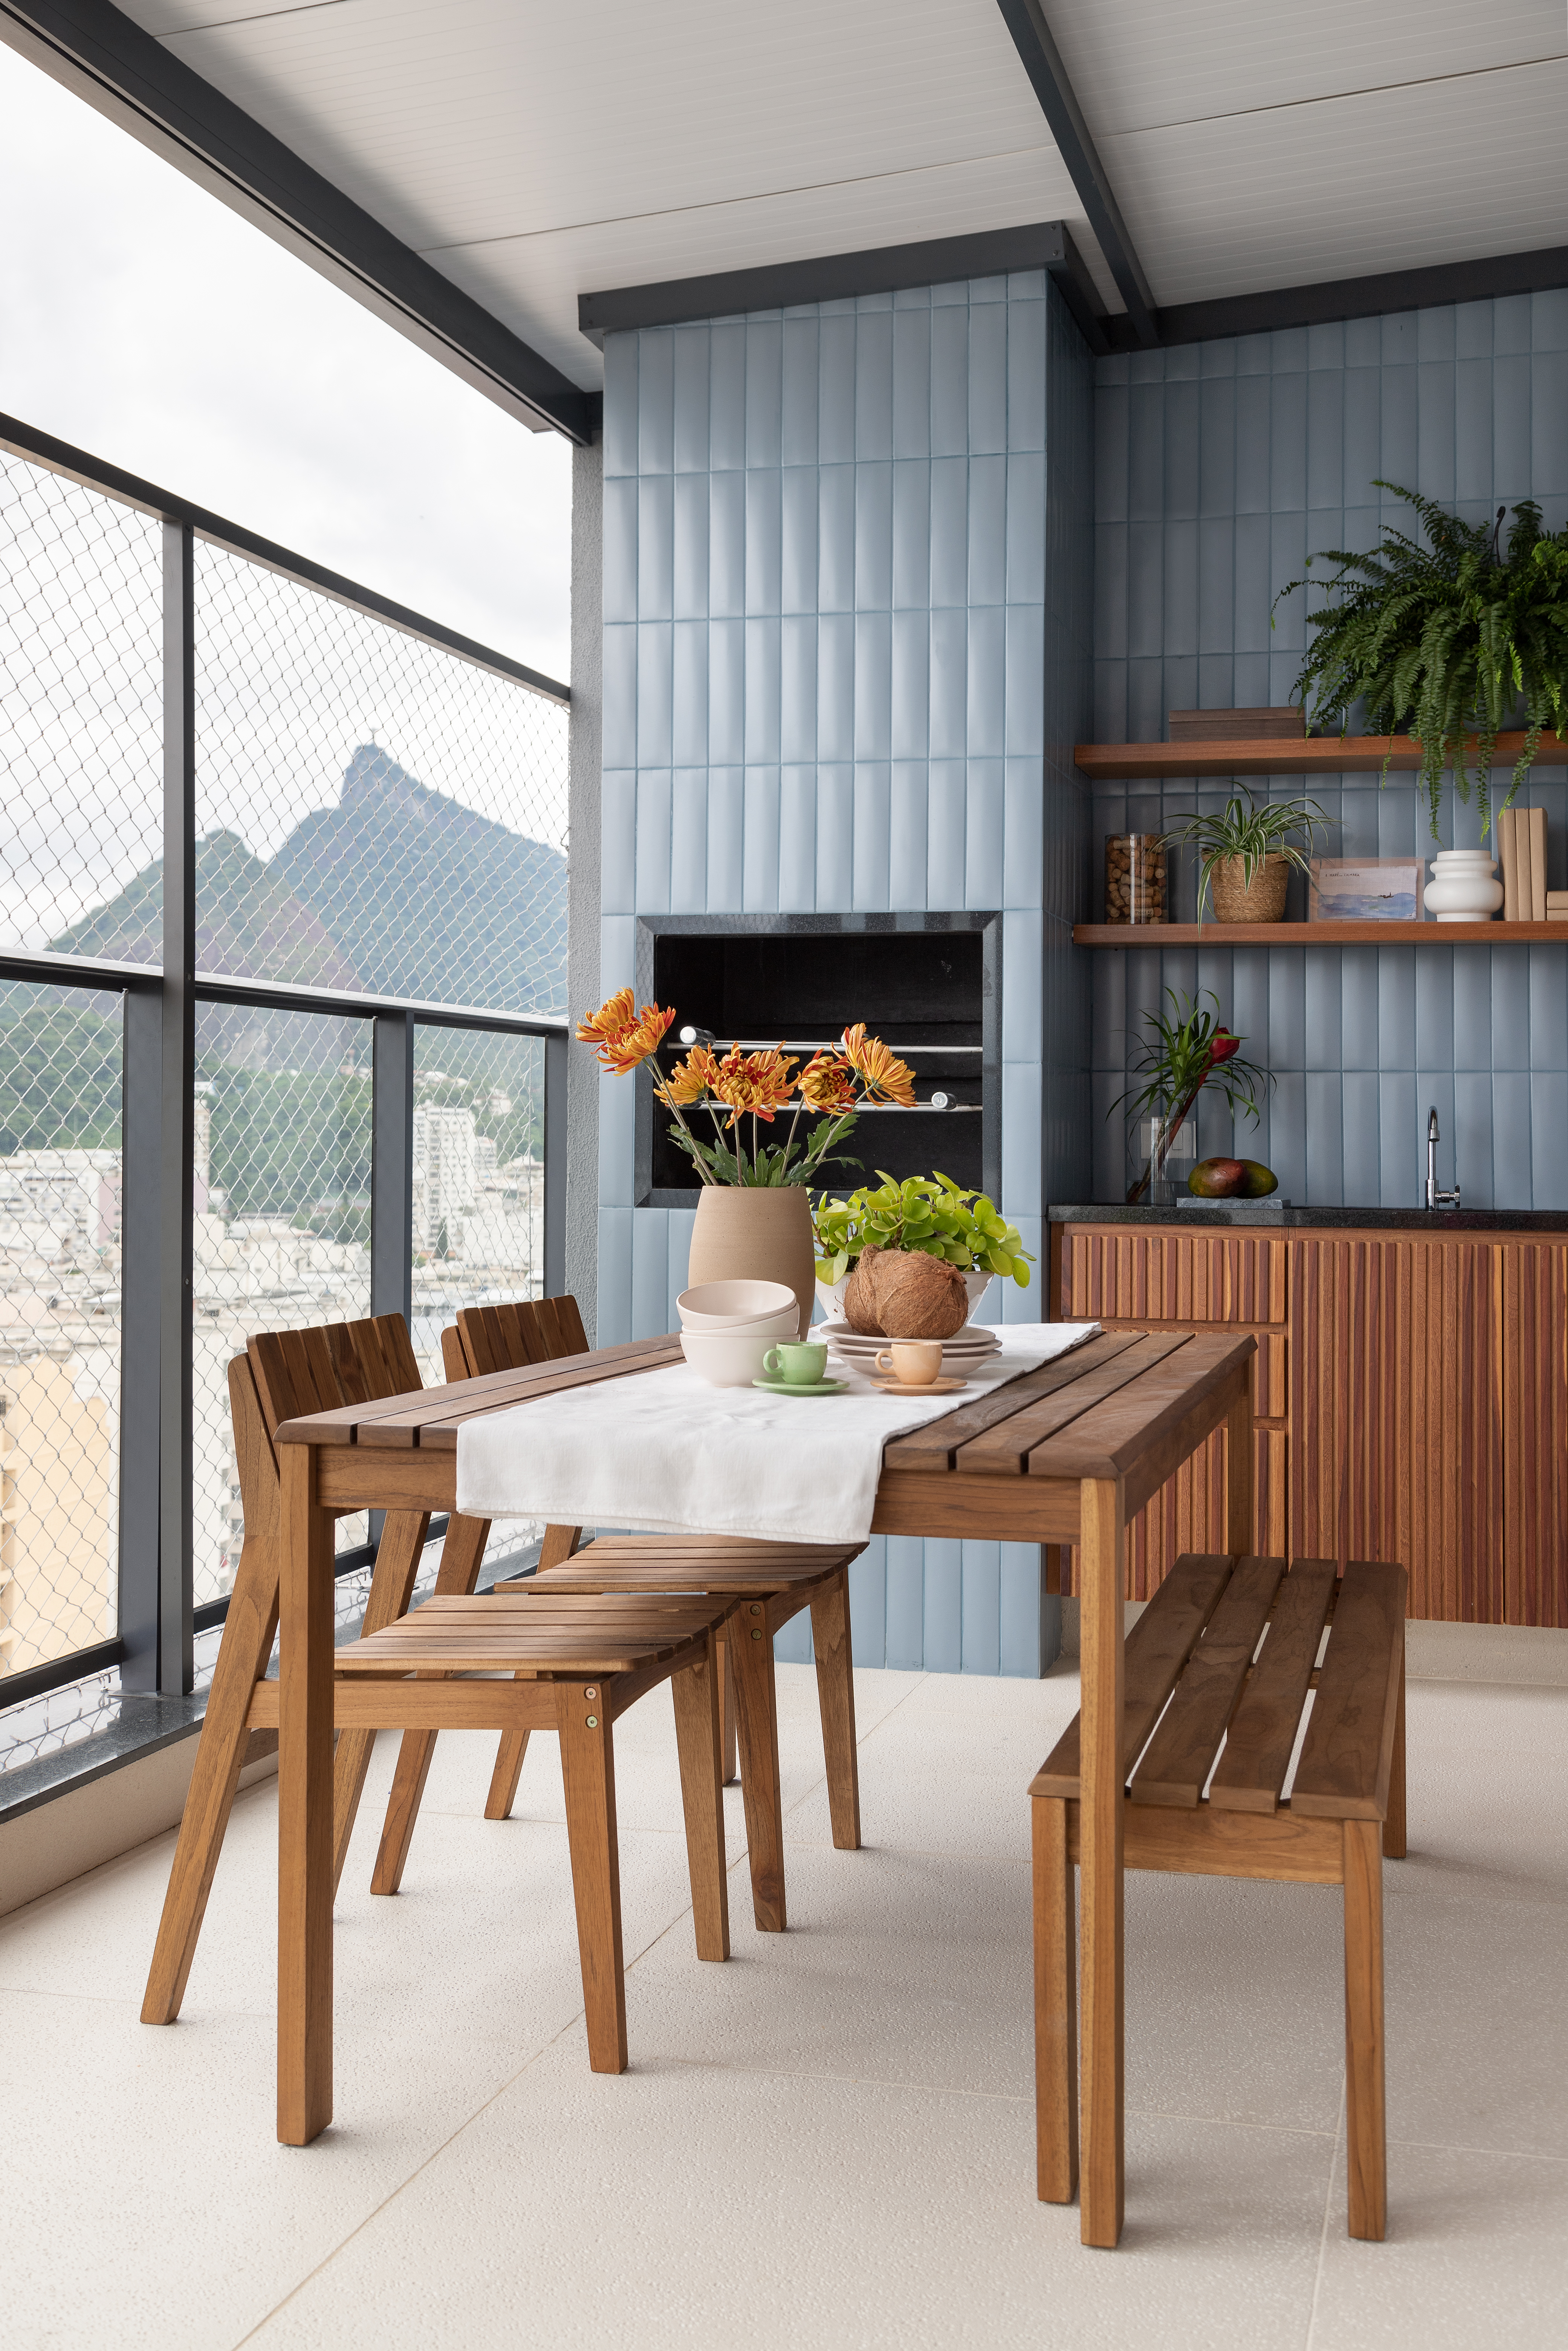 Área gourmet; varanda gourmet com churrasqueira, mesa de madeira e parede revestida de azulejos azuis.